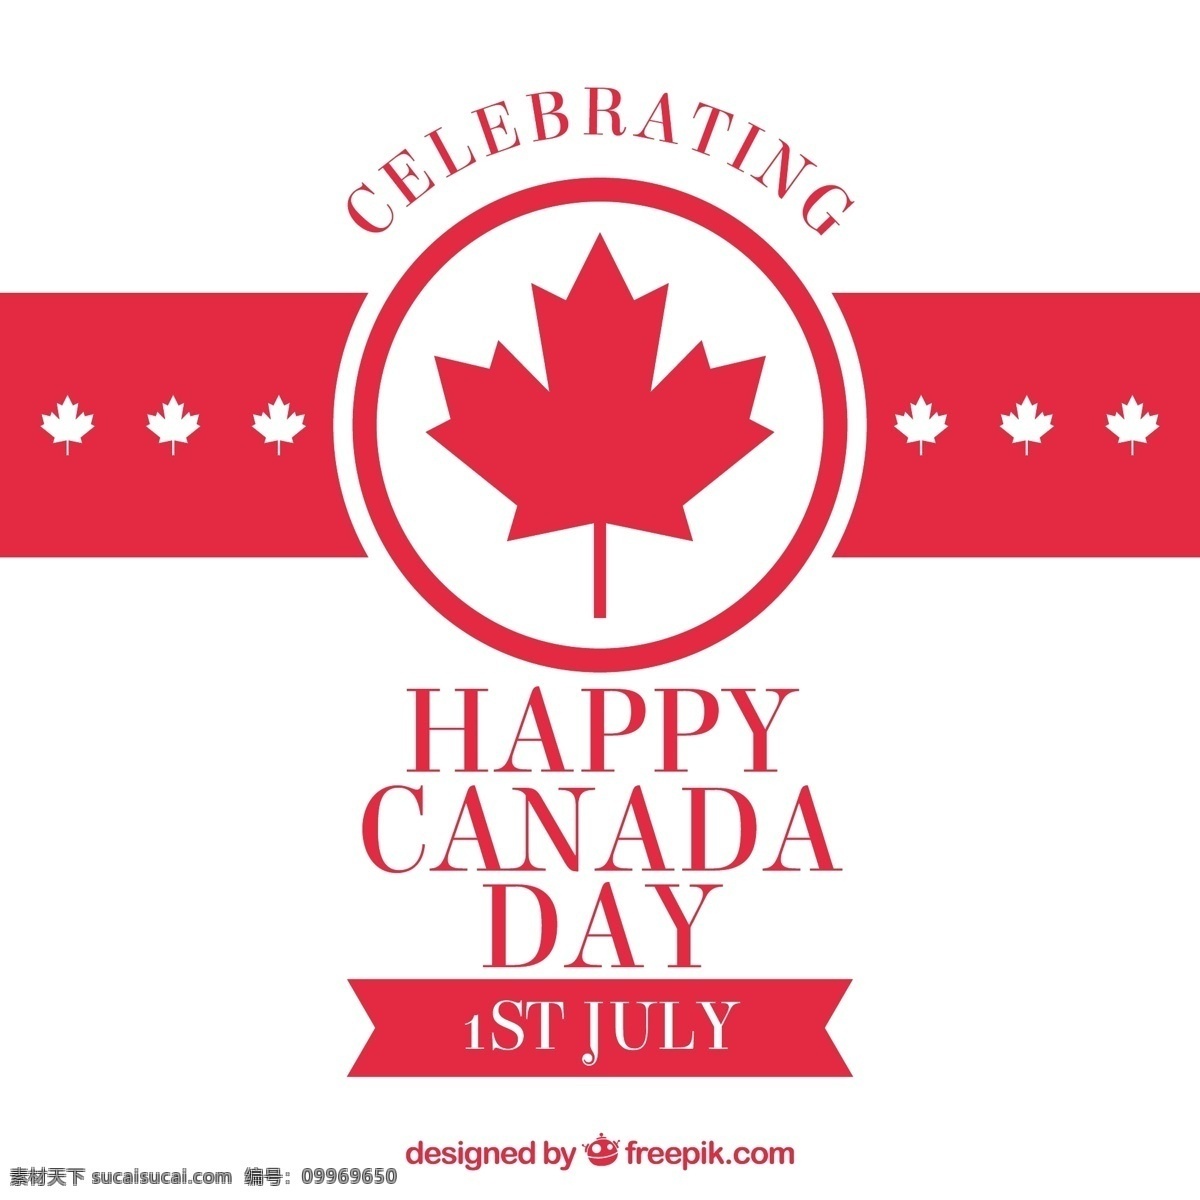 扁平化 加拿大 国庆日 背景 扁平化设计 加拿大国庆日